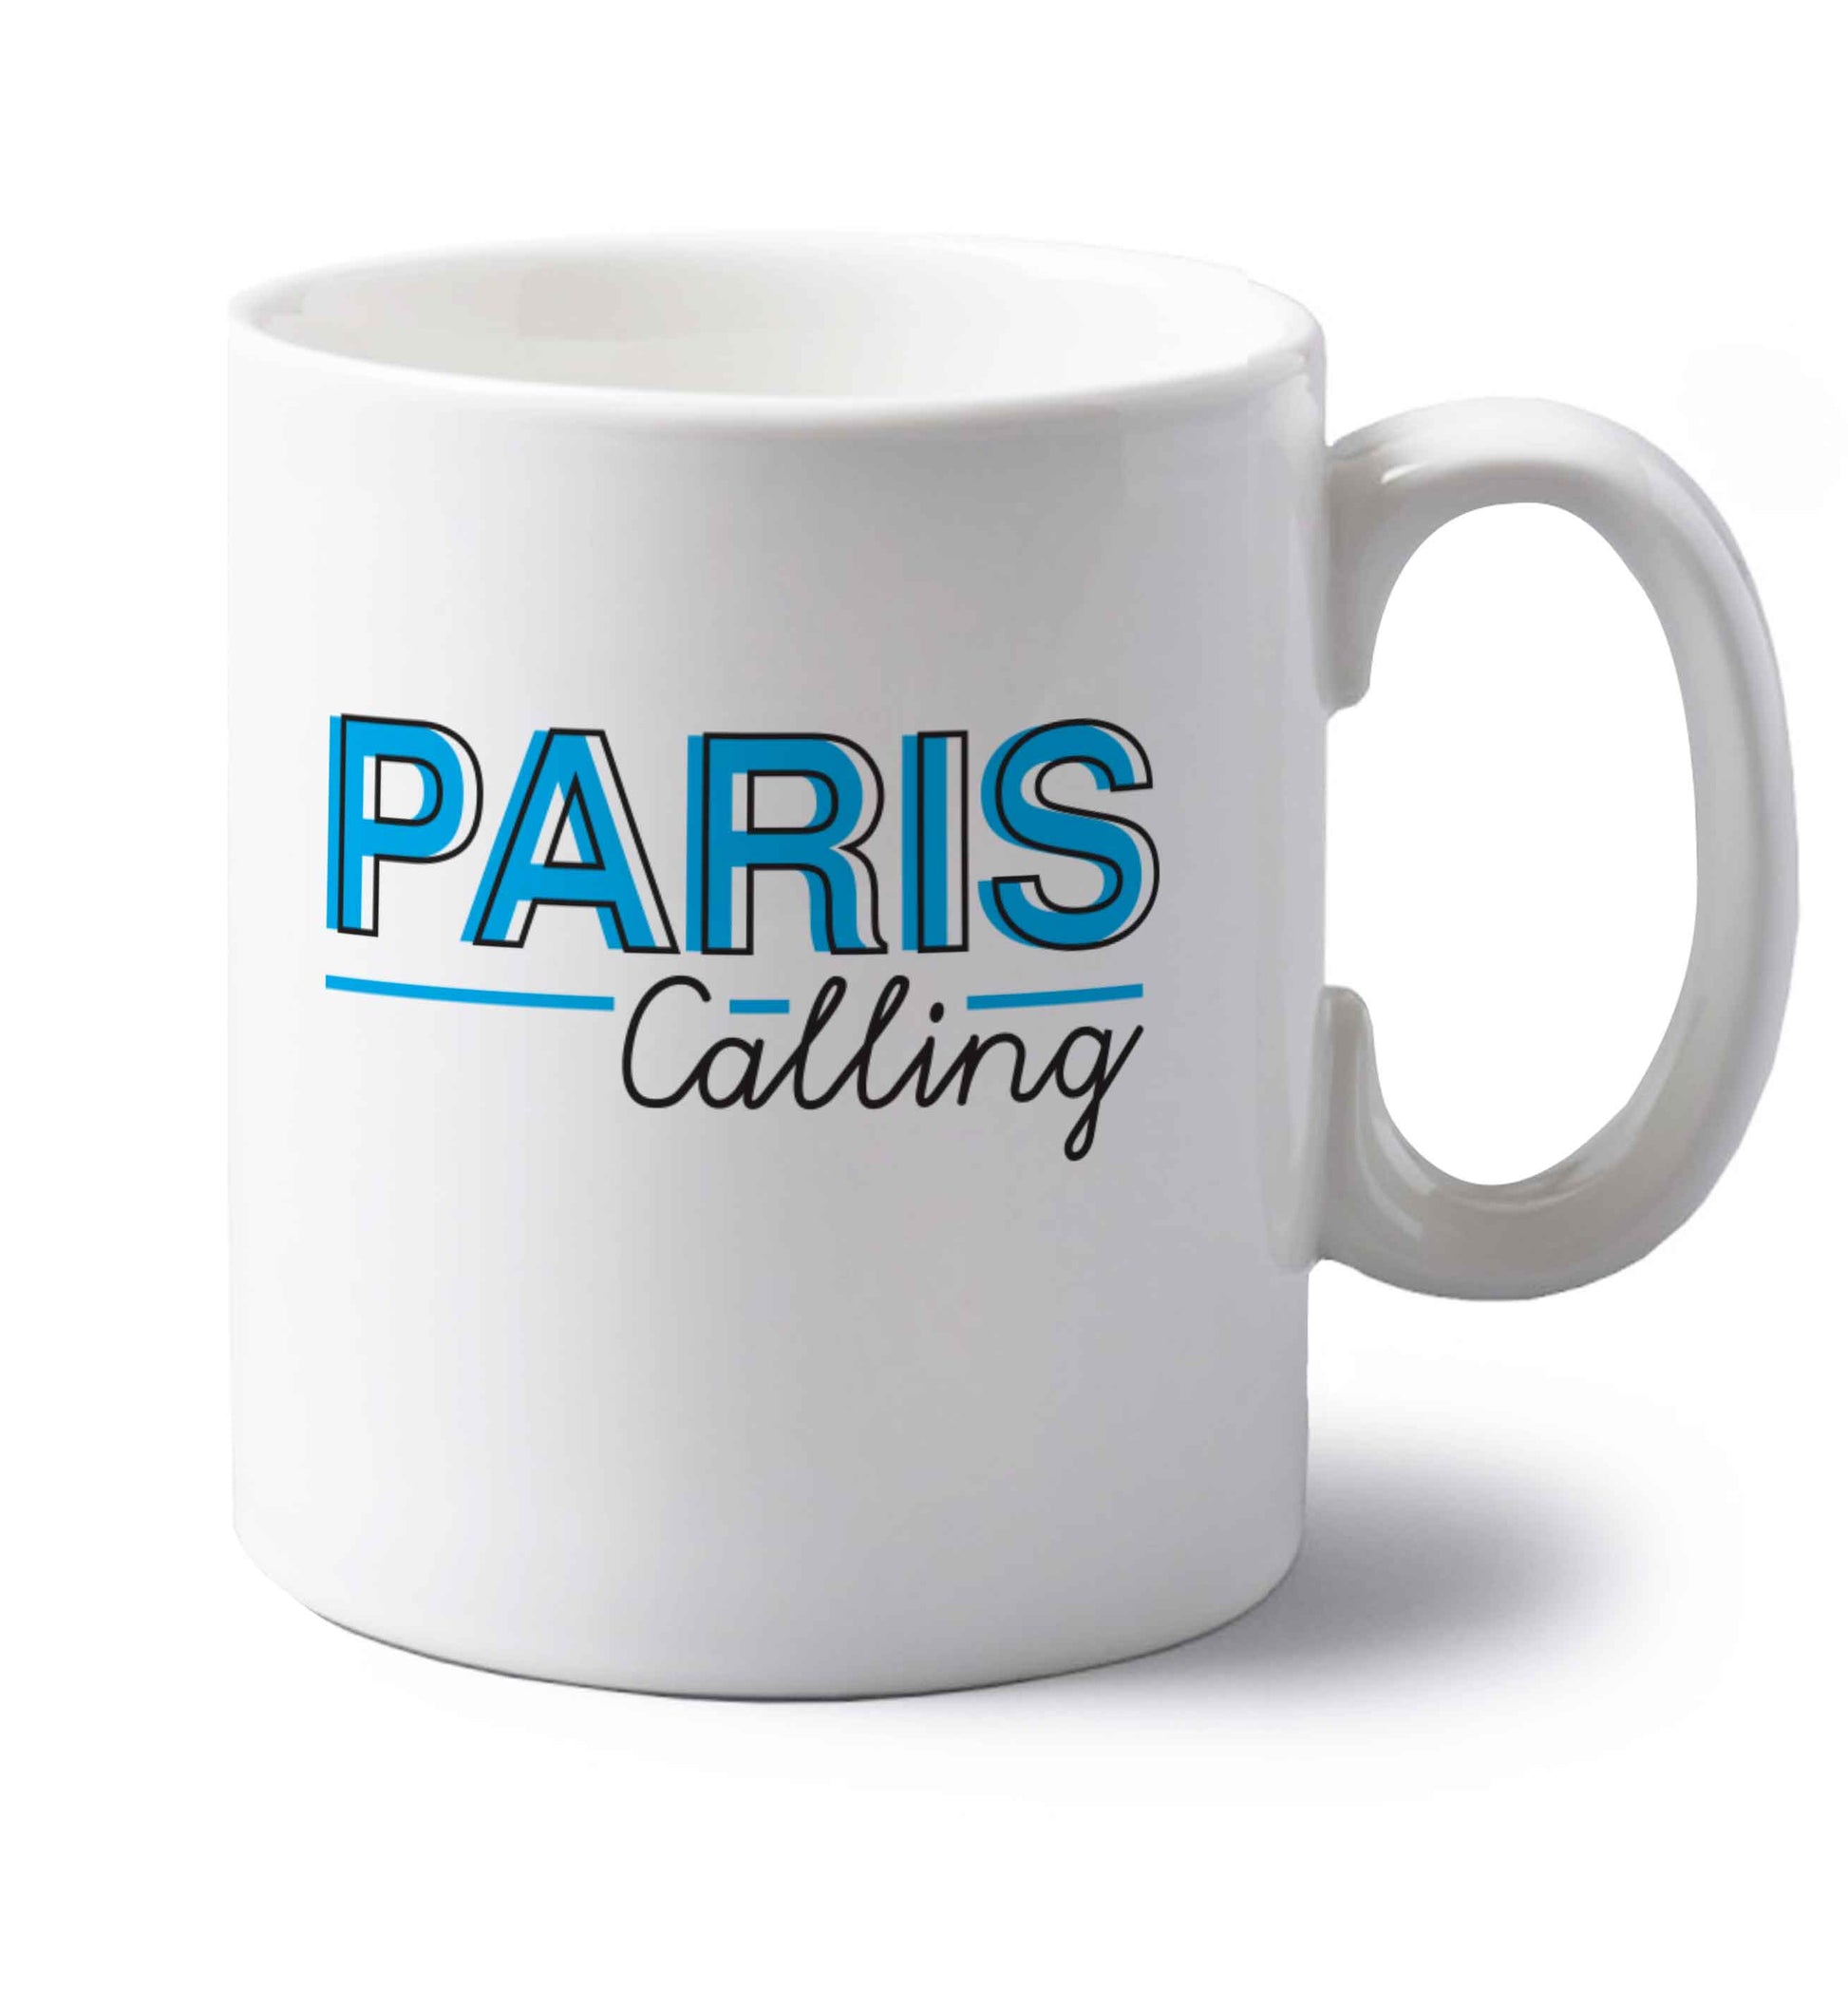 Paris calling left handed white ceramic mug 